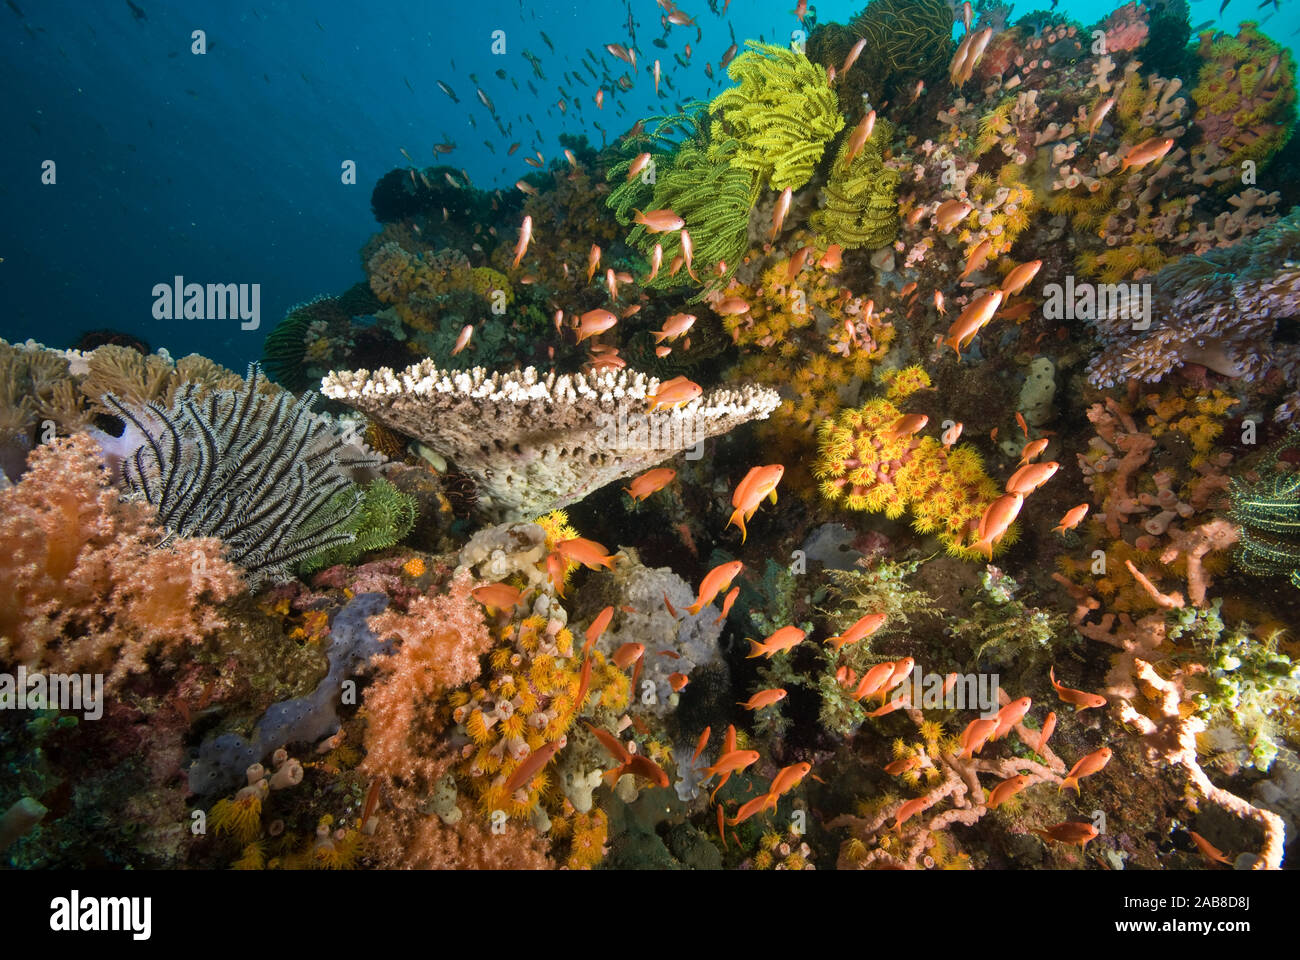 Lebendige reef Szene mit Fairy basslets (Pseudanthias cf cheirospilos), die vorherrschende orange basslets sind Frauen, die lila sind Männer. Es gibt al Stockfoto